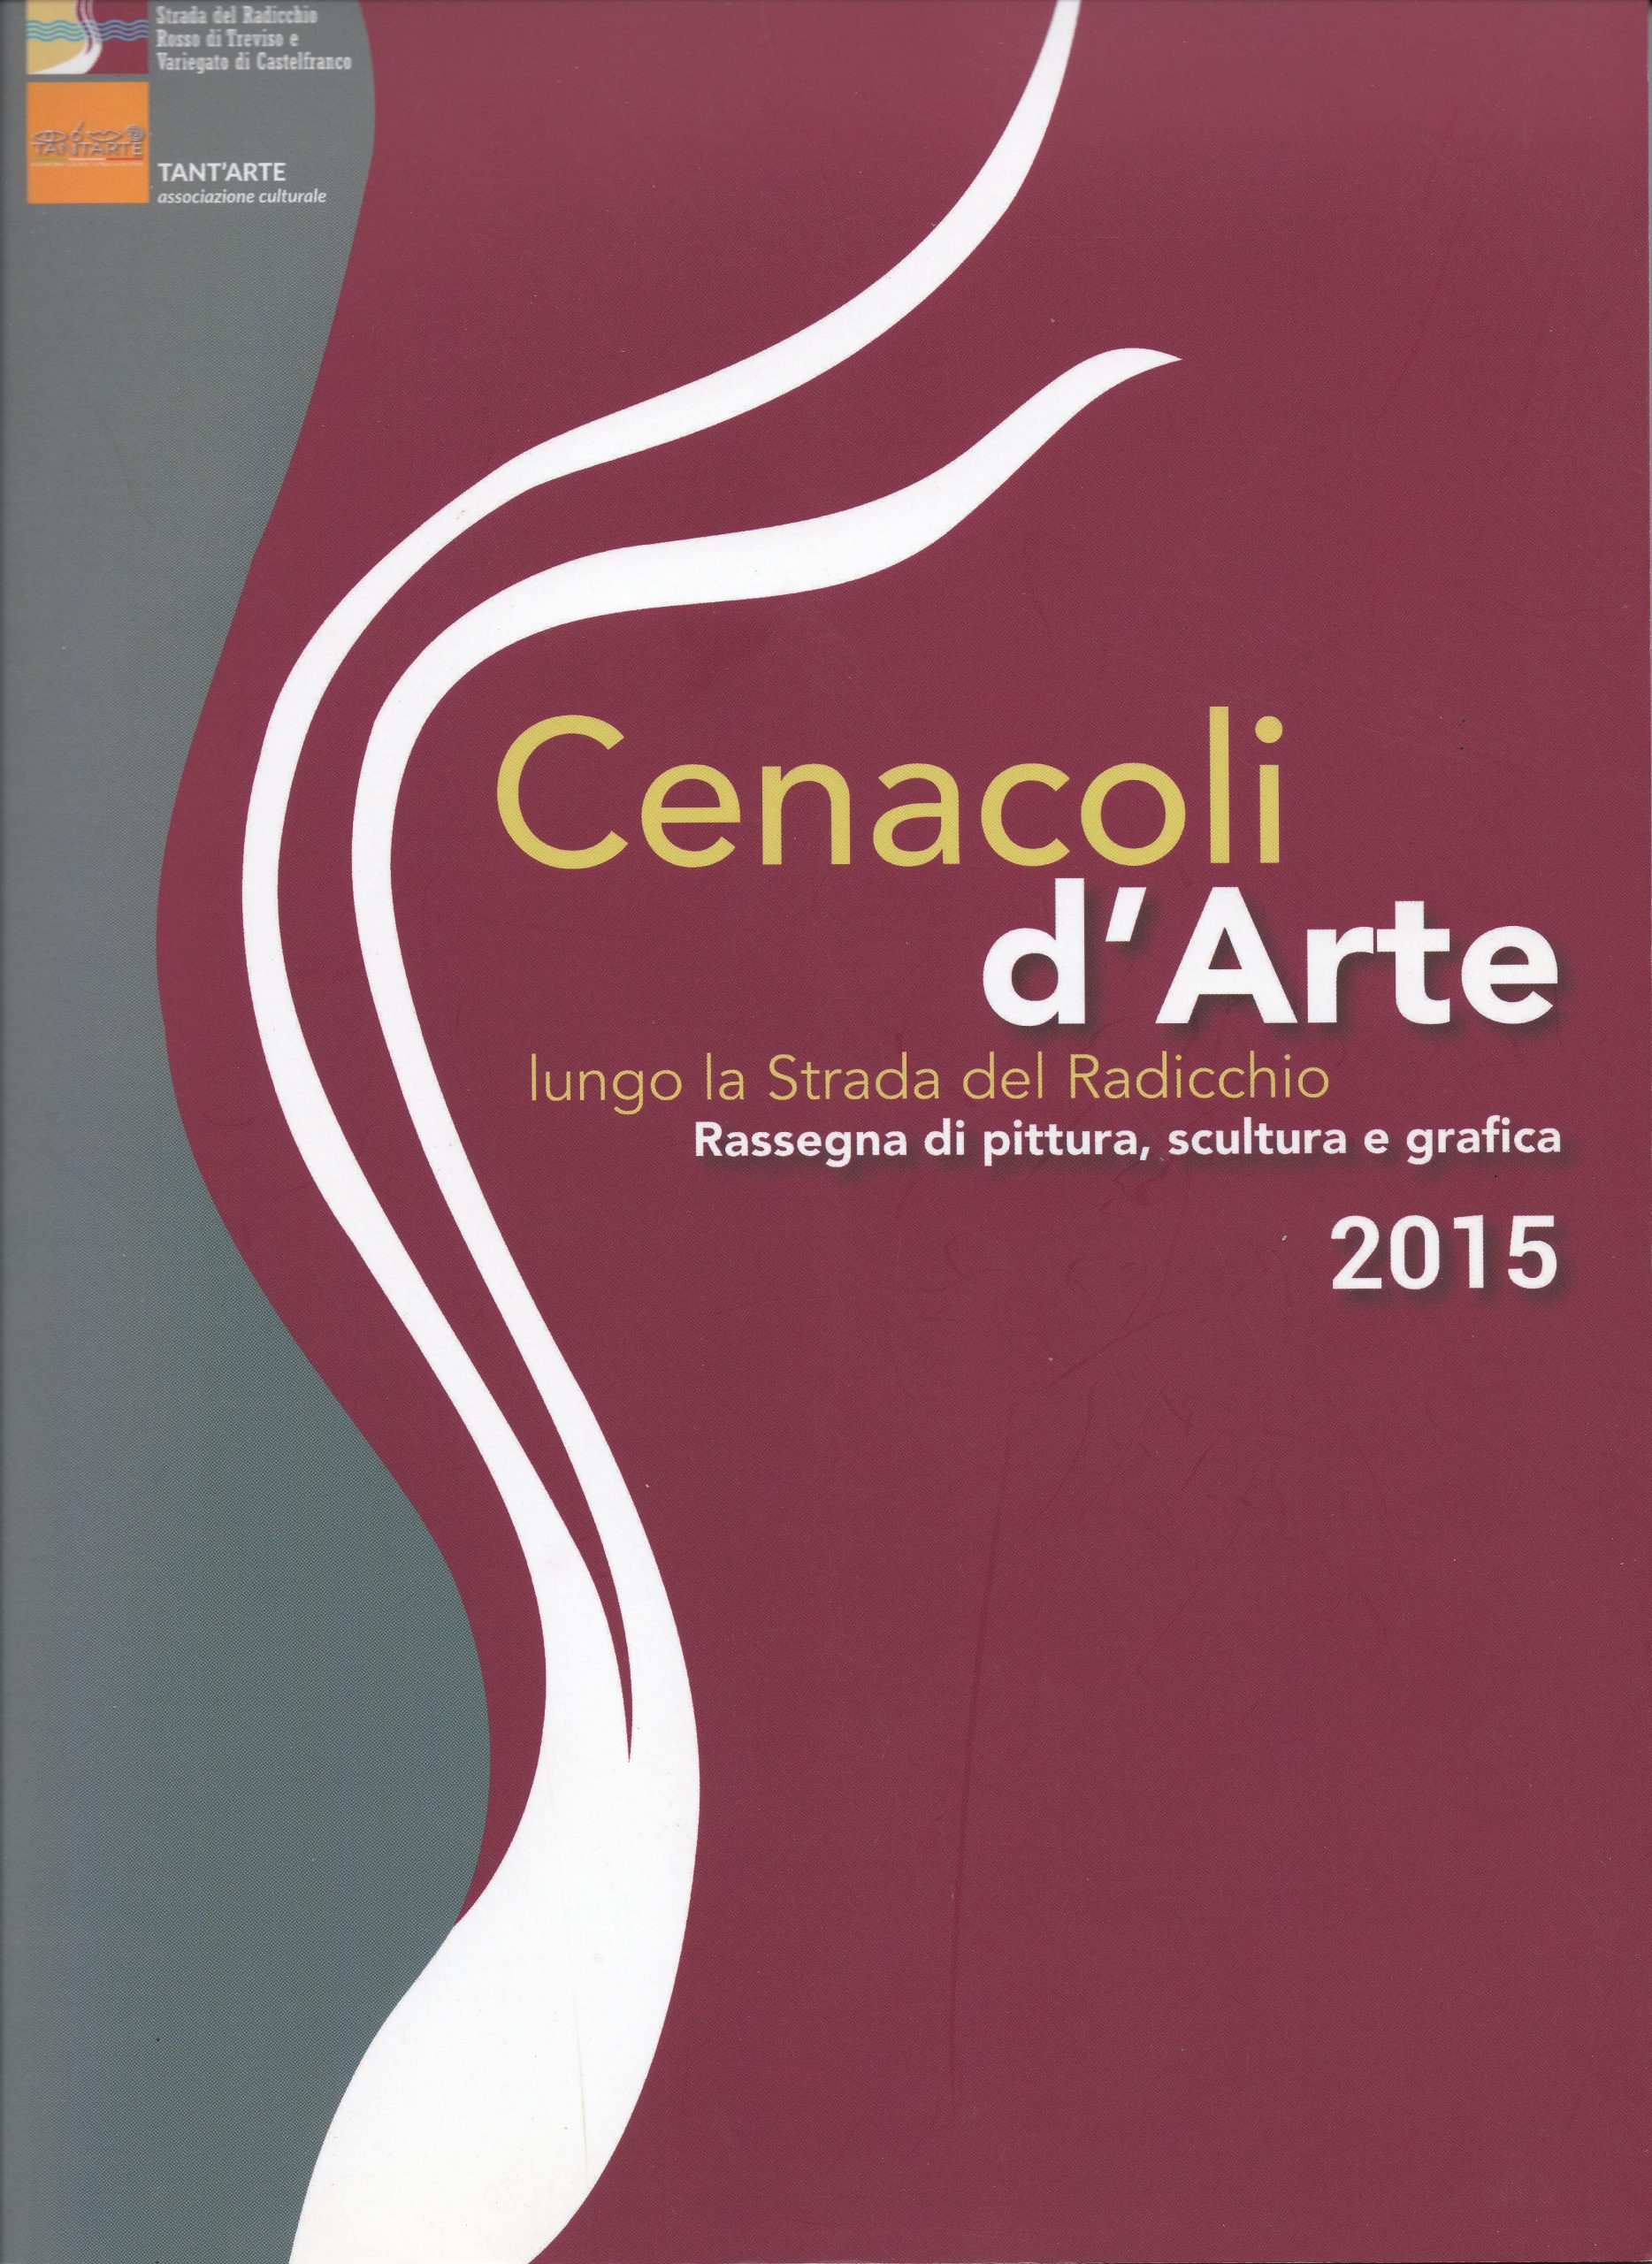 “Cenacoli d’Arte”, catalogo della mostra, agosto 2015